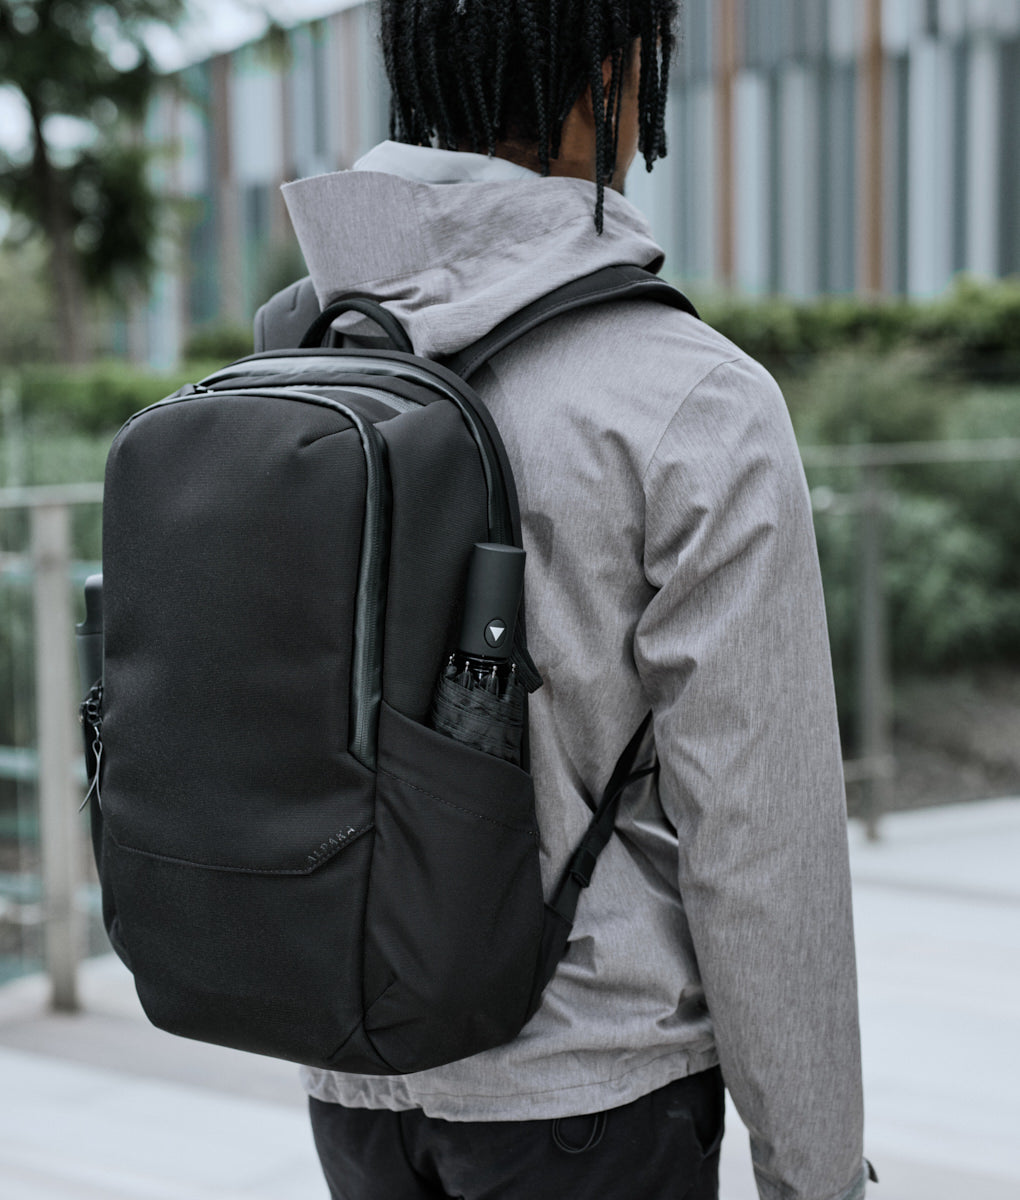 Elements Backpack Pro | ALPAKA